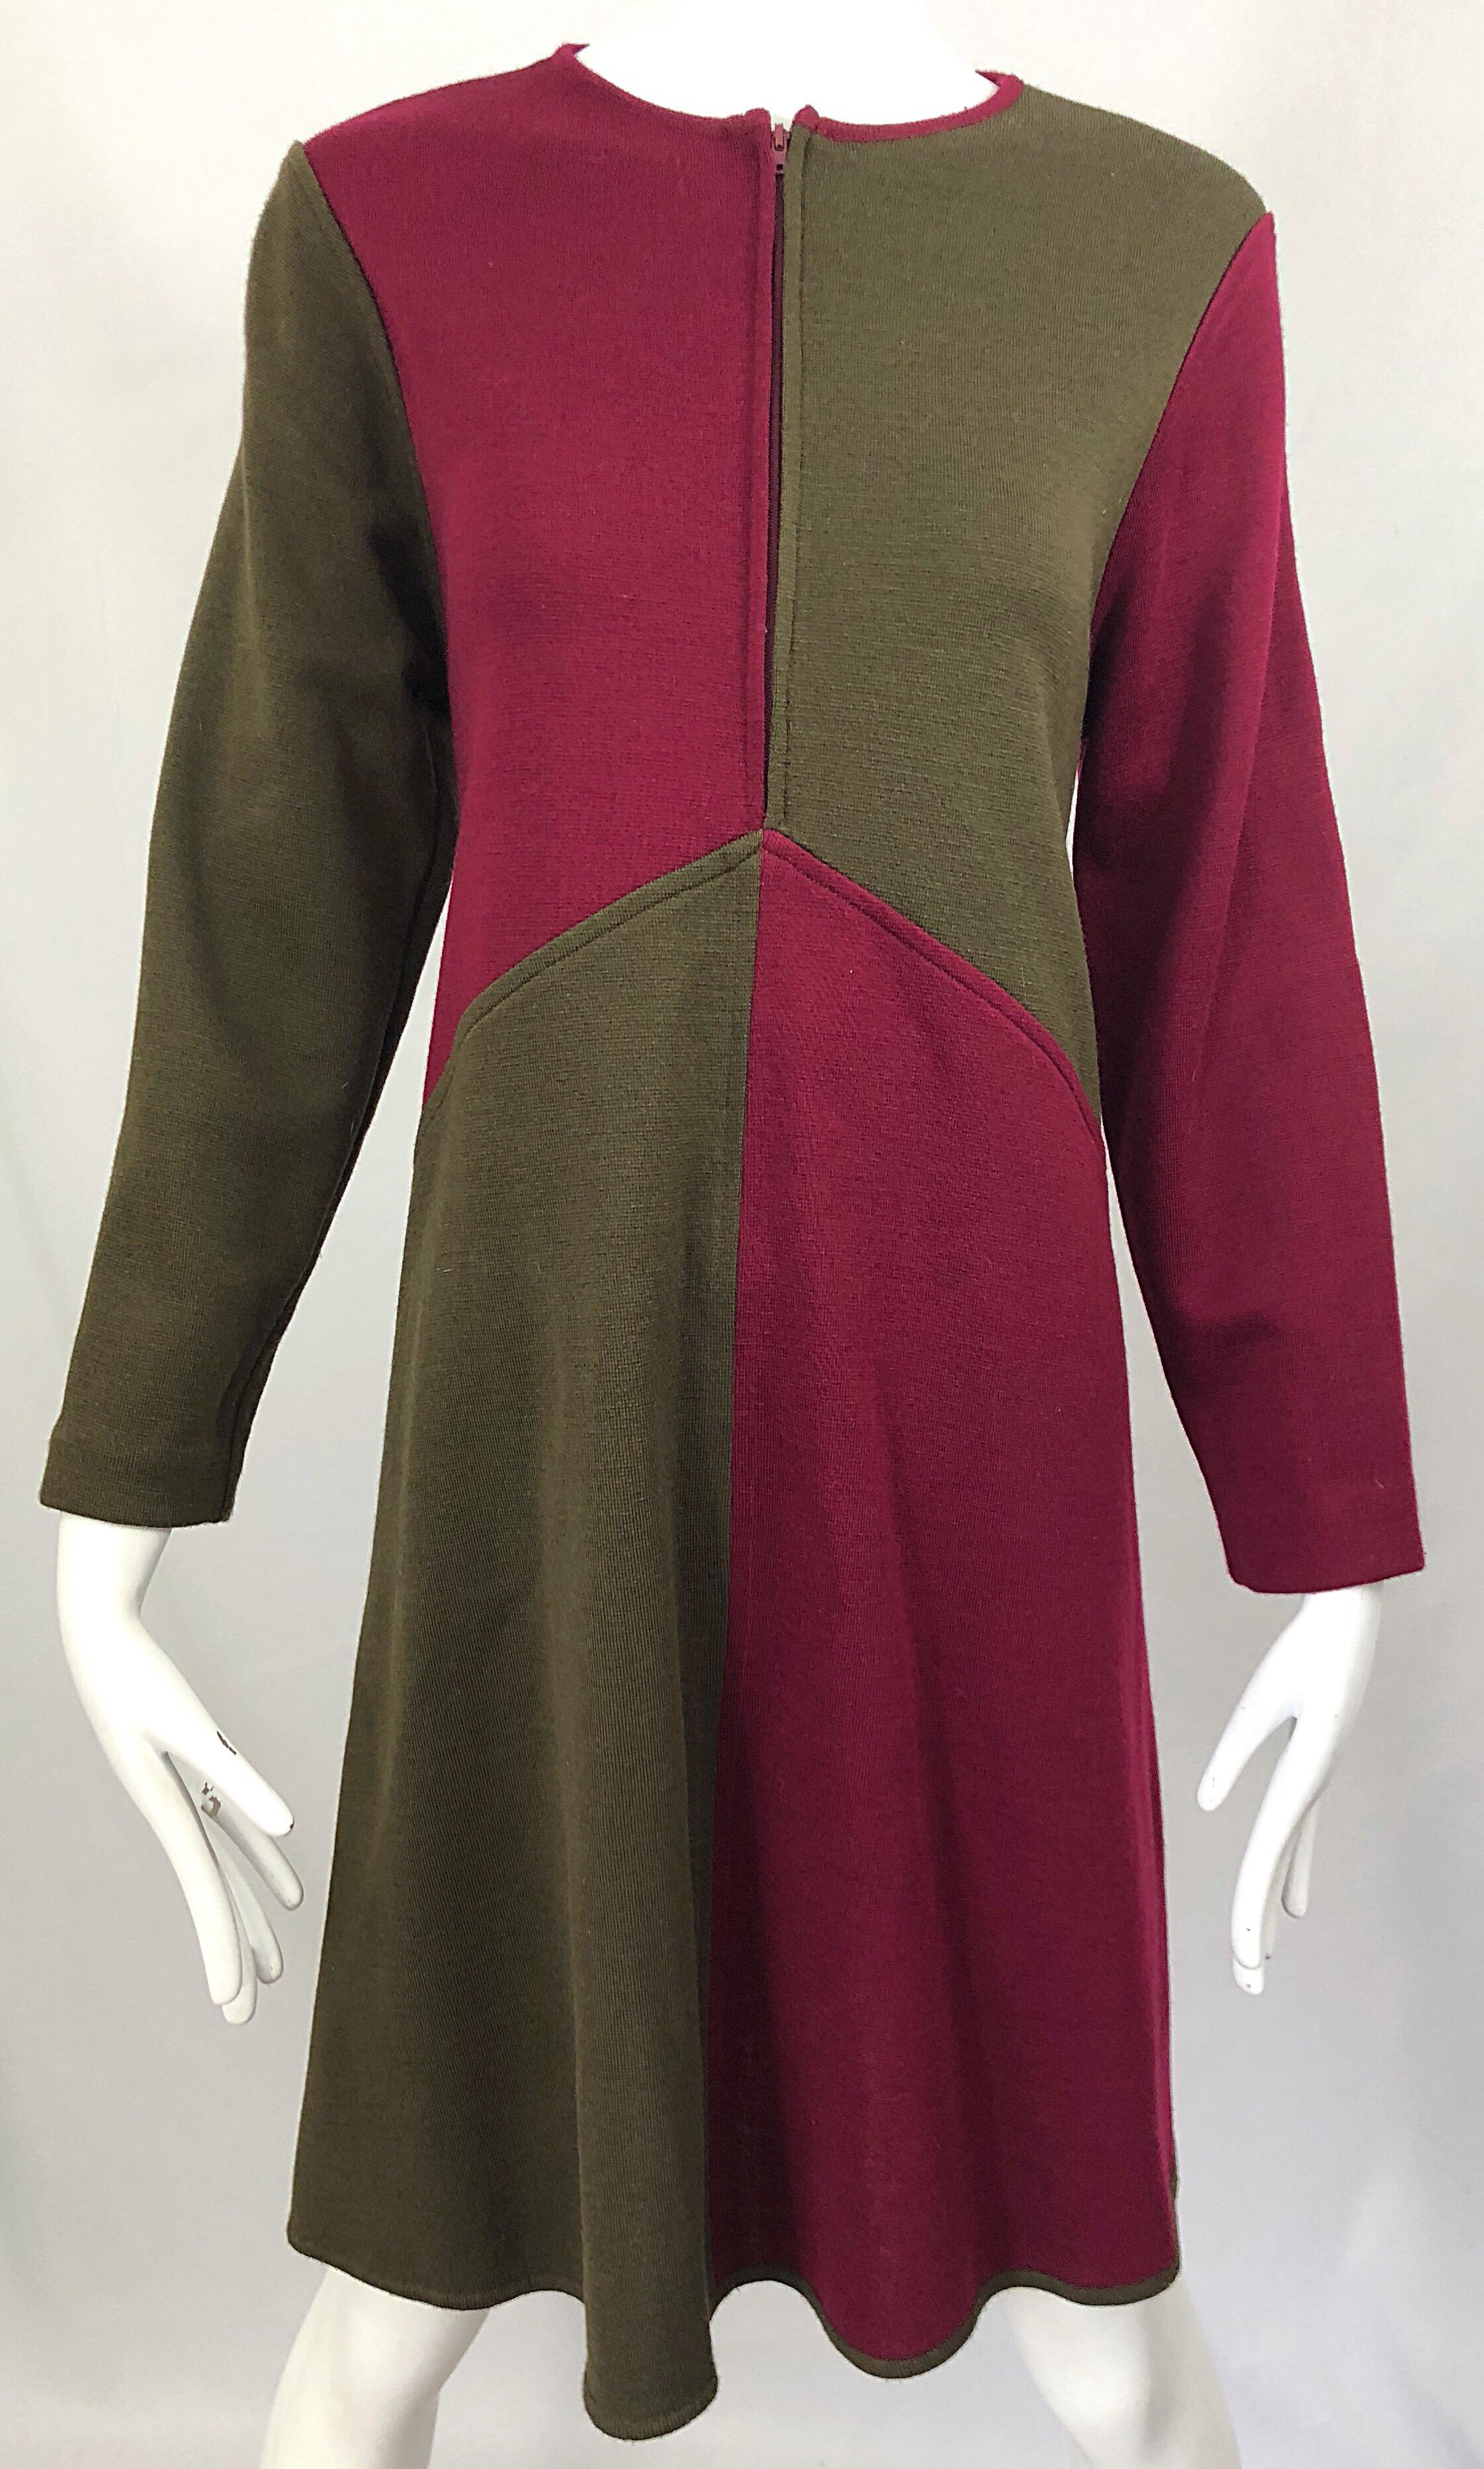 Vintage Harve Benard 1960s Style Maroon Burgundy + Brown Knit Wool Swing Dress For Sale 5